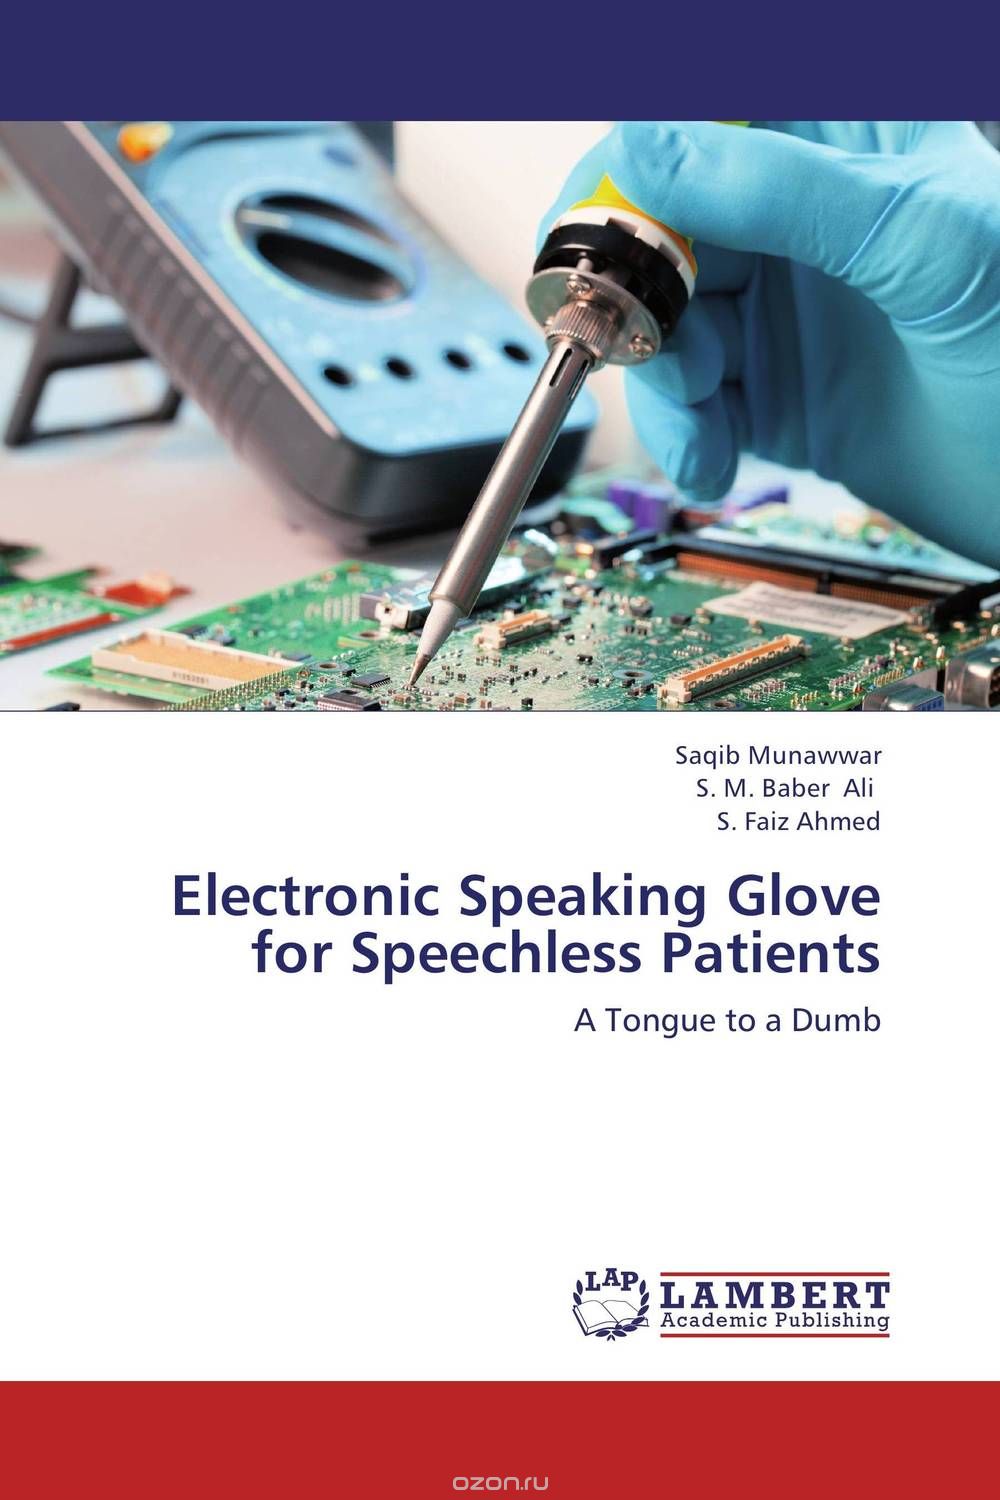 Скачать книгу "Electronic Speaking Glove for Speechless Patients"